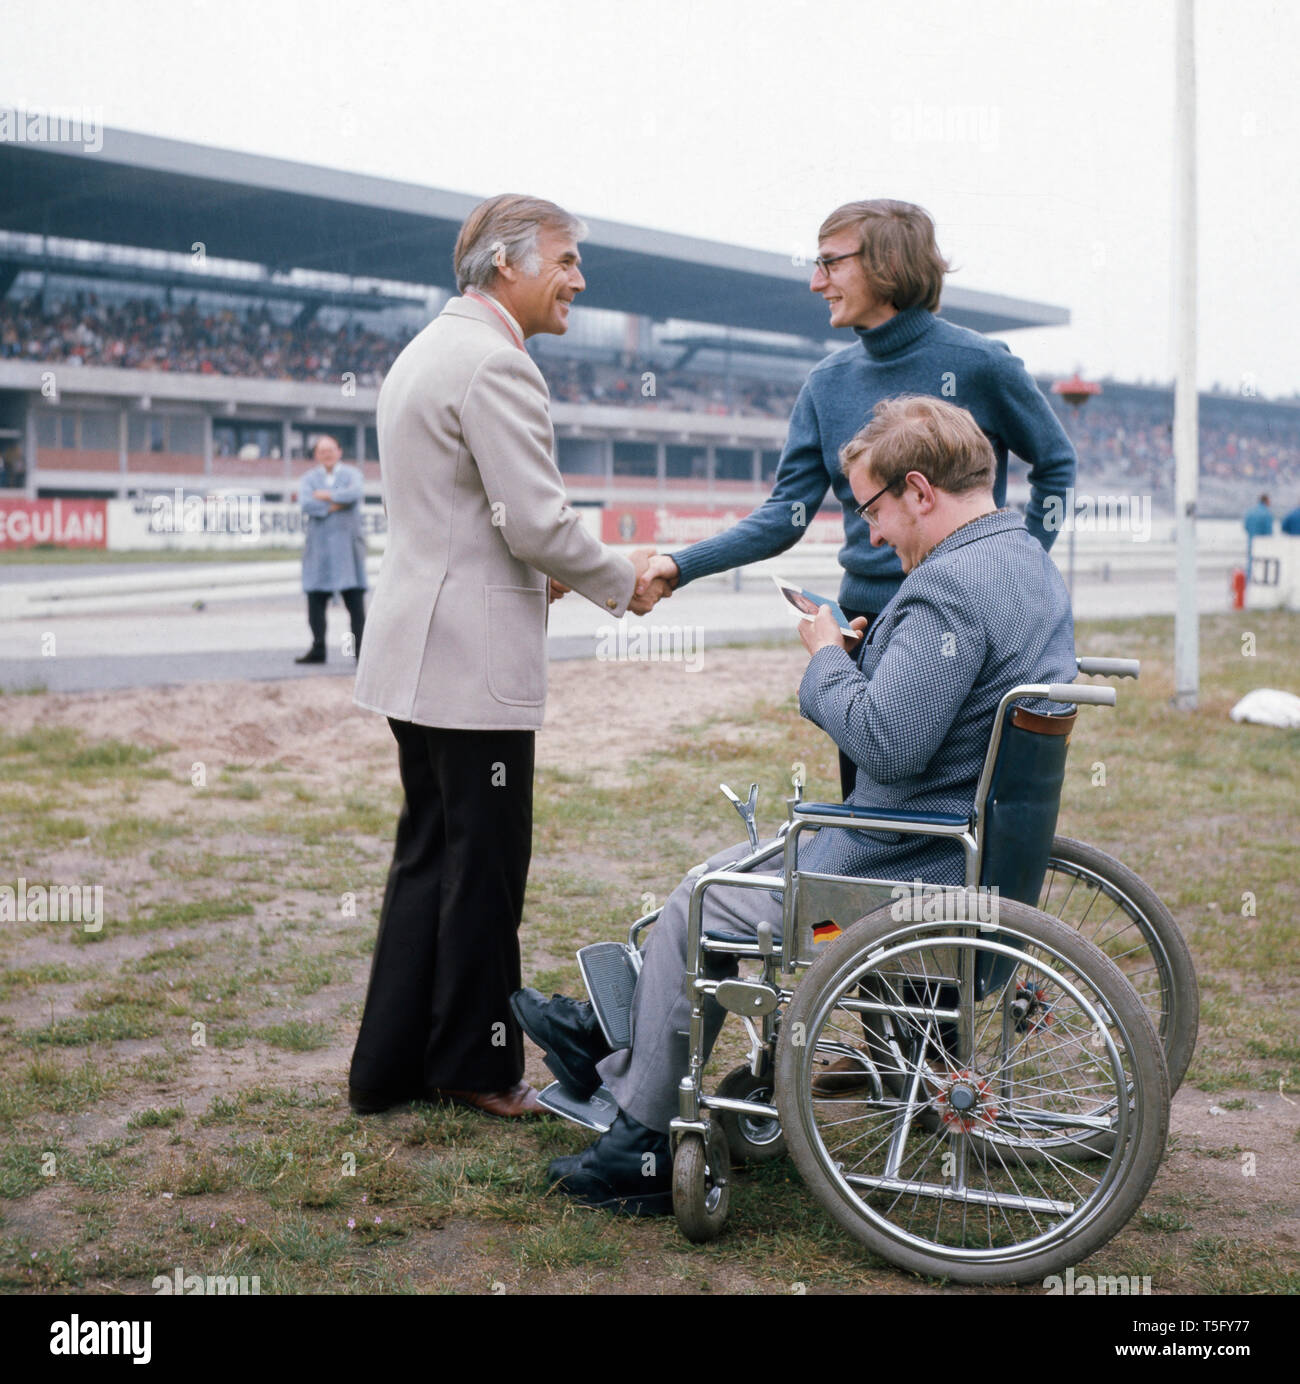 Fuchsberger begrüßt einen ventola Rollstuhl im abseits der Rennbahn, ca 1970. Fuchsberger accoglie un ventilatore in una sedia a rotelle fuori pista, ca 1970 Foto Stock